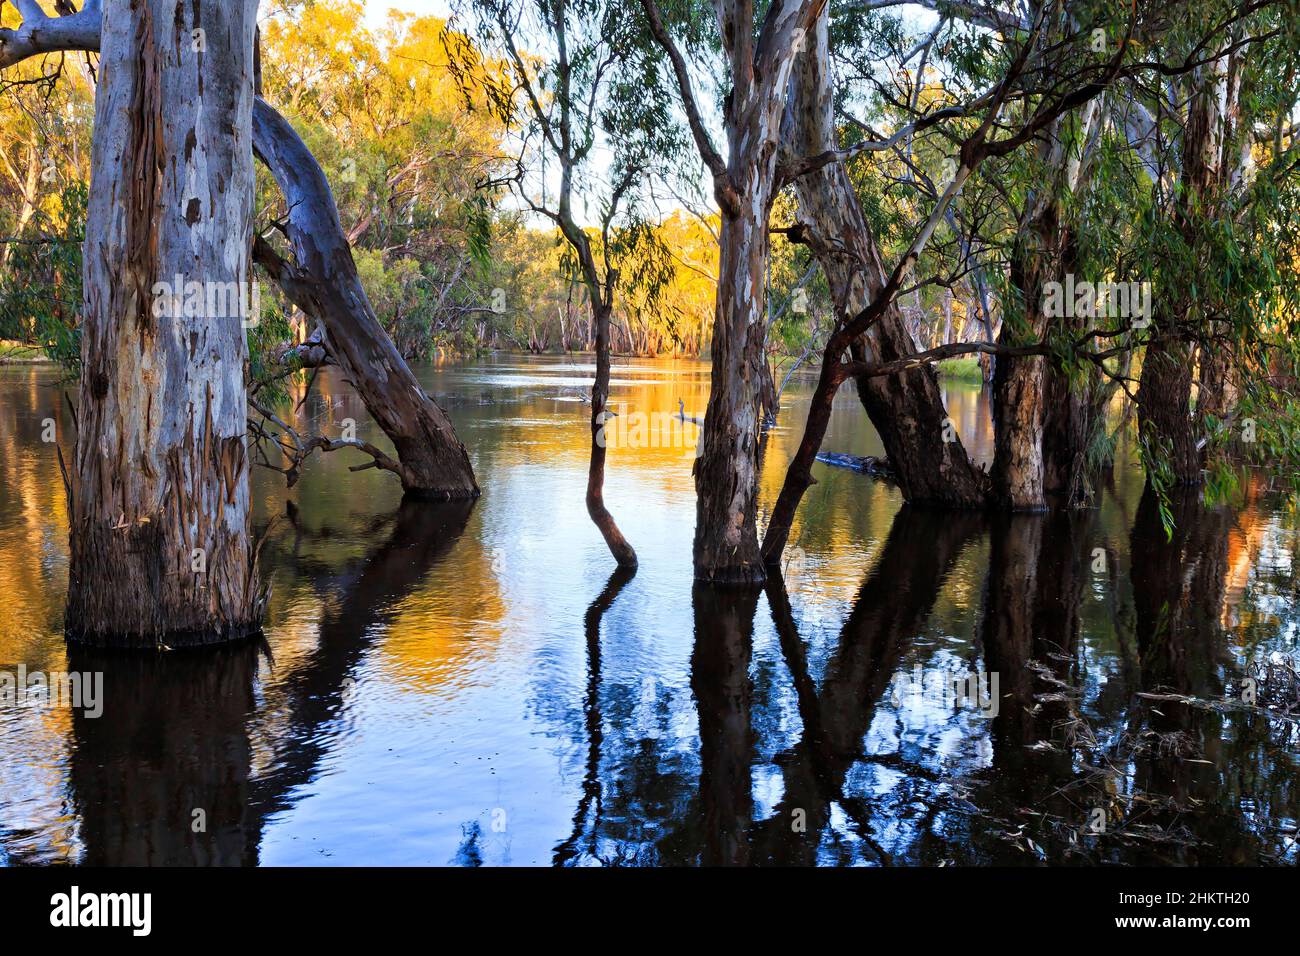 Überschwemmt den murrumbidgee River im australischen Outback in der Nähe des Balranald River mit Gummibäumen, die im Wasser wachsen. Stockfoto